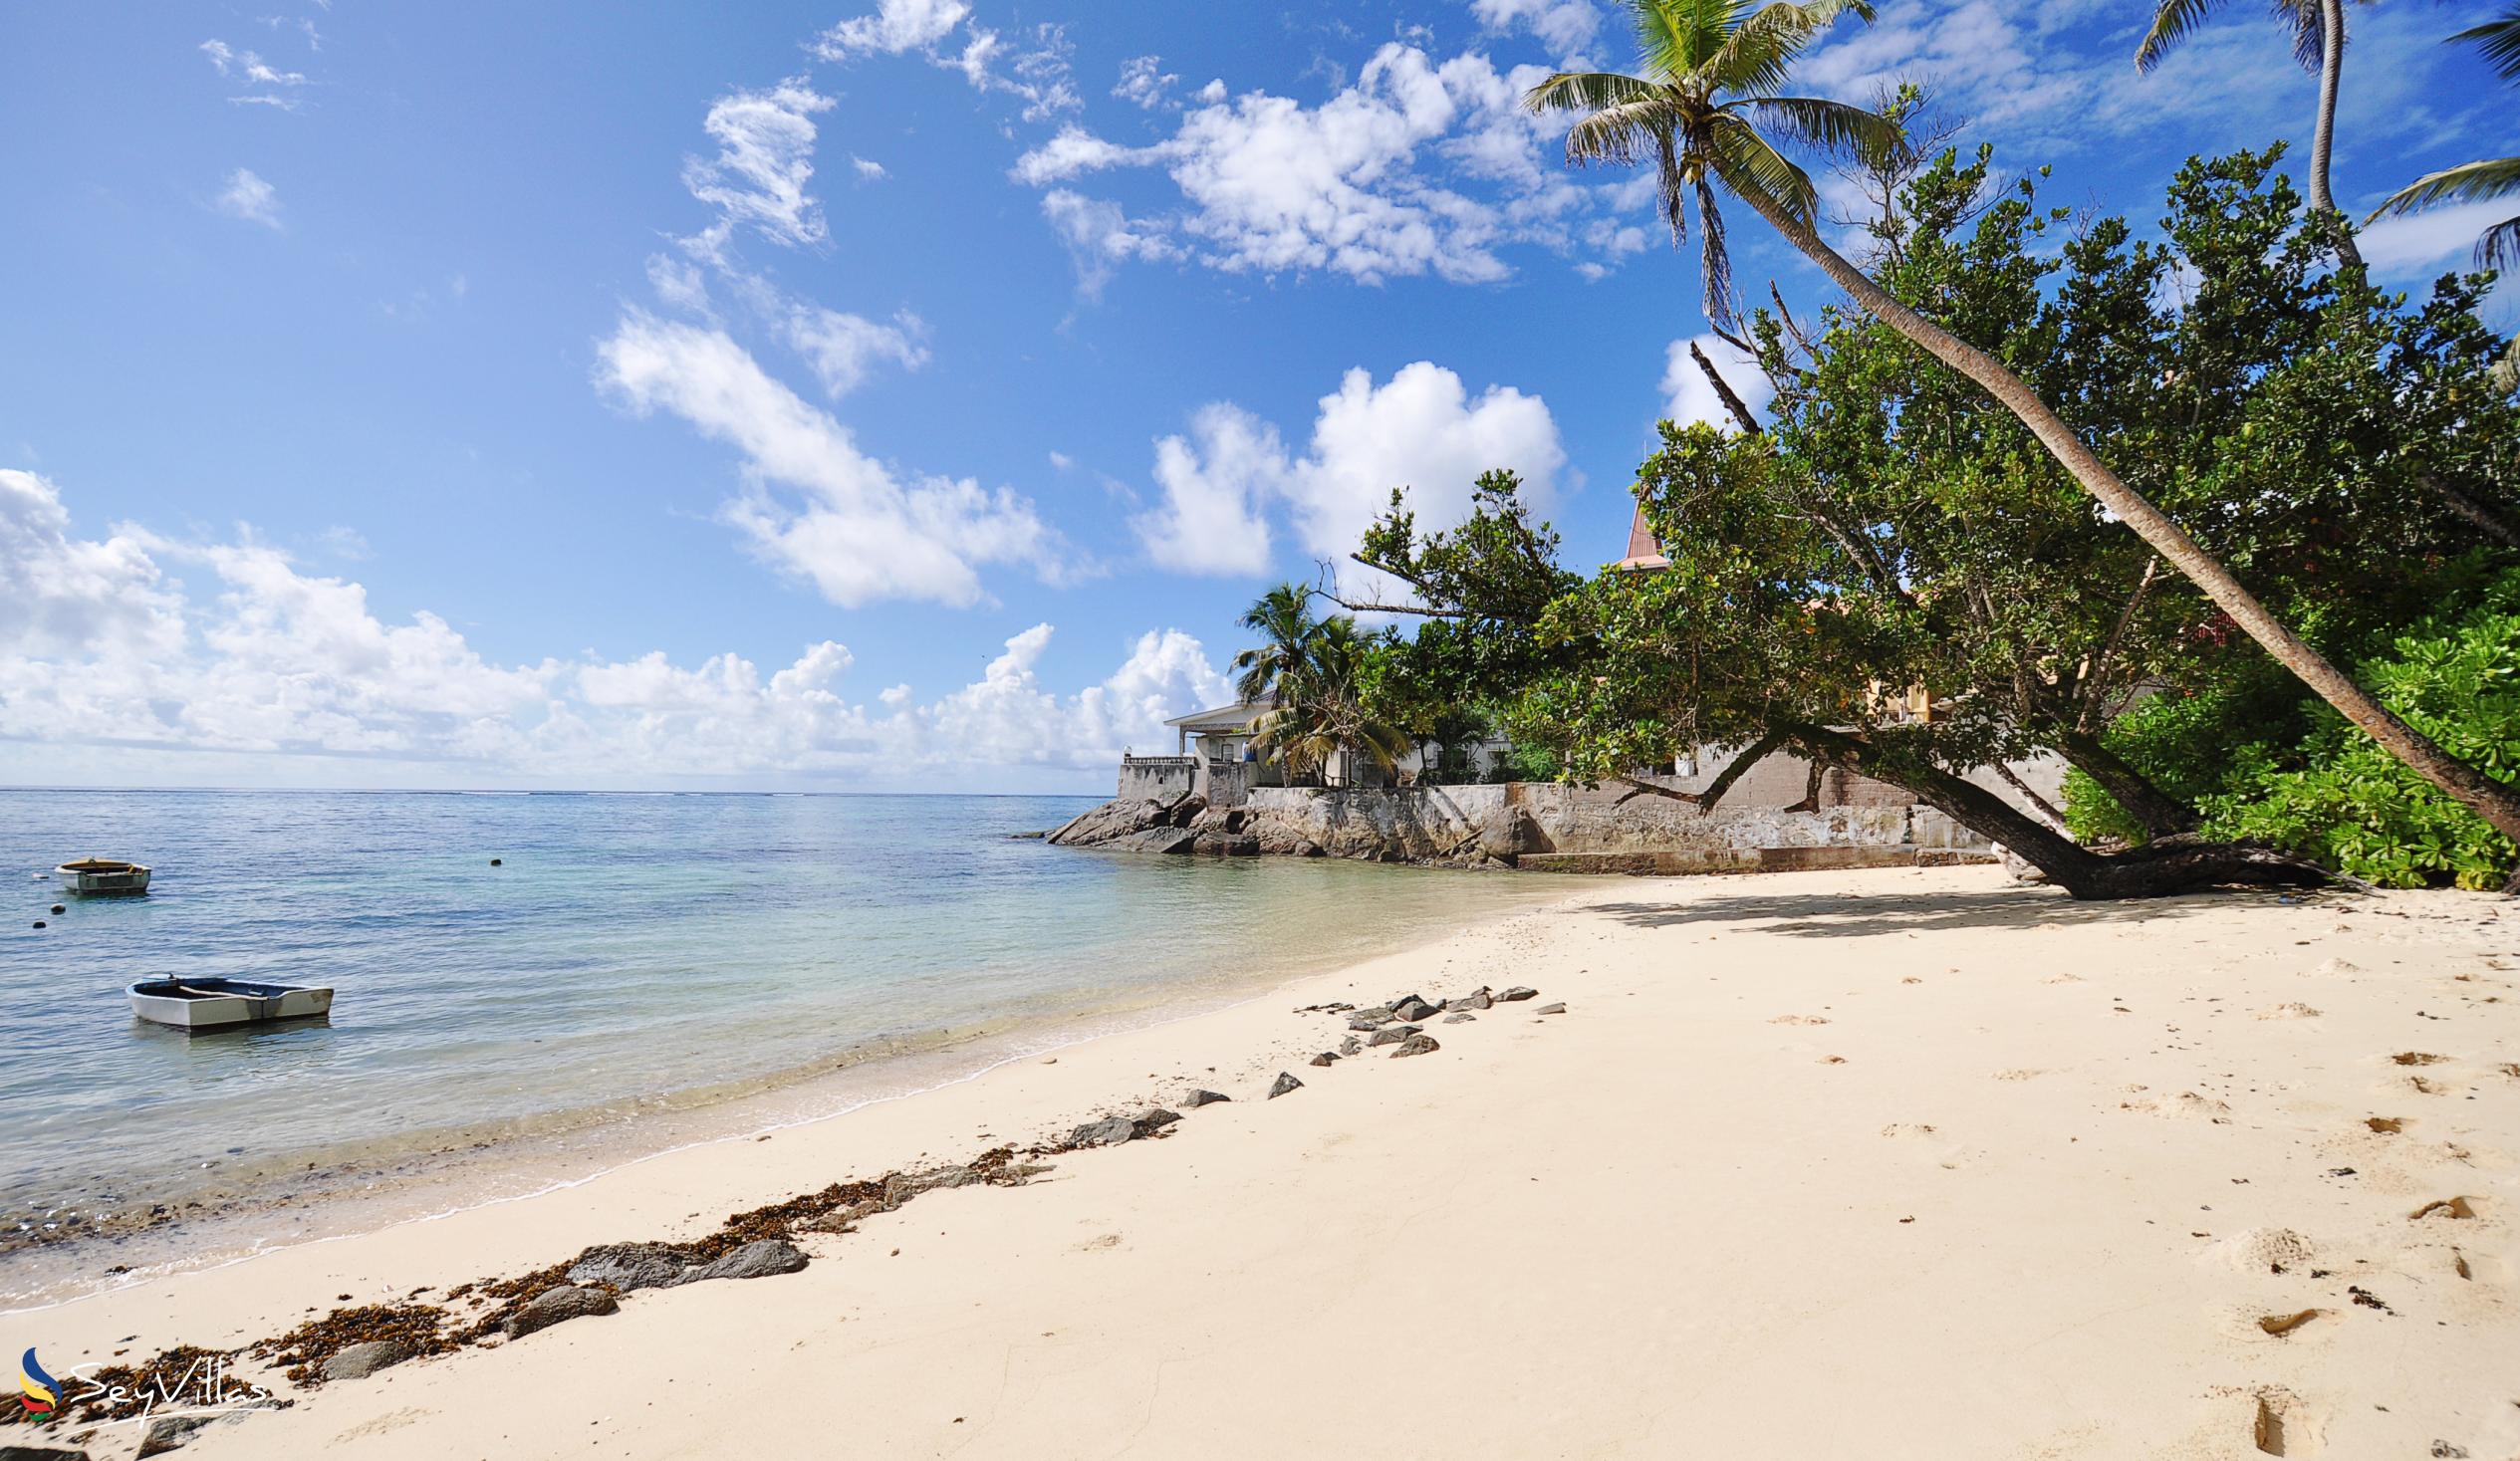 Foto 36: Coco Blanche - Spiagge - Mahé (Seychelles)